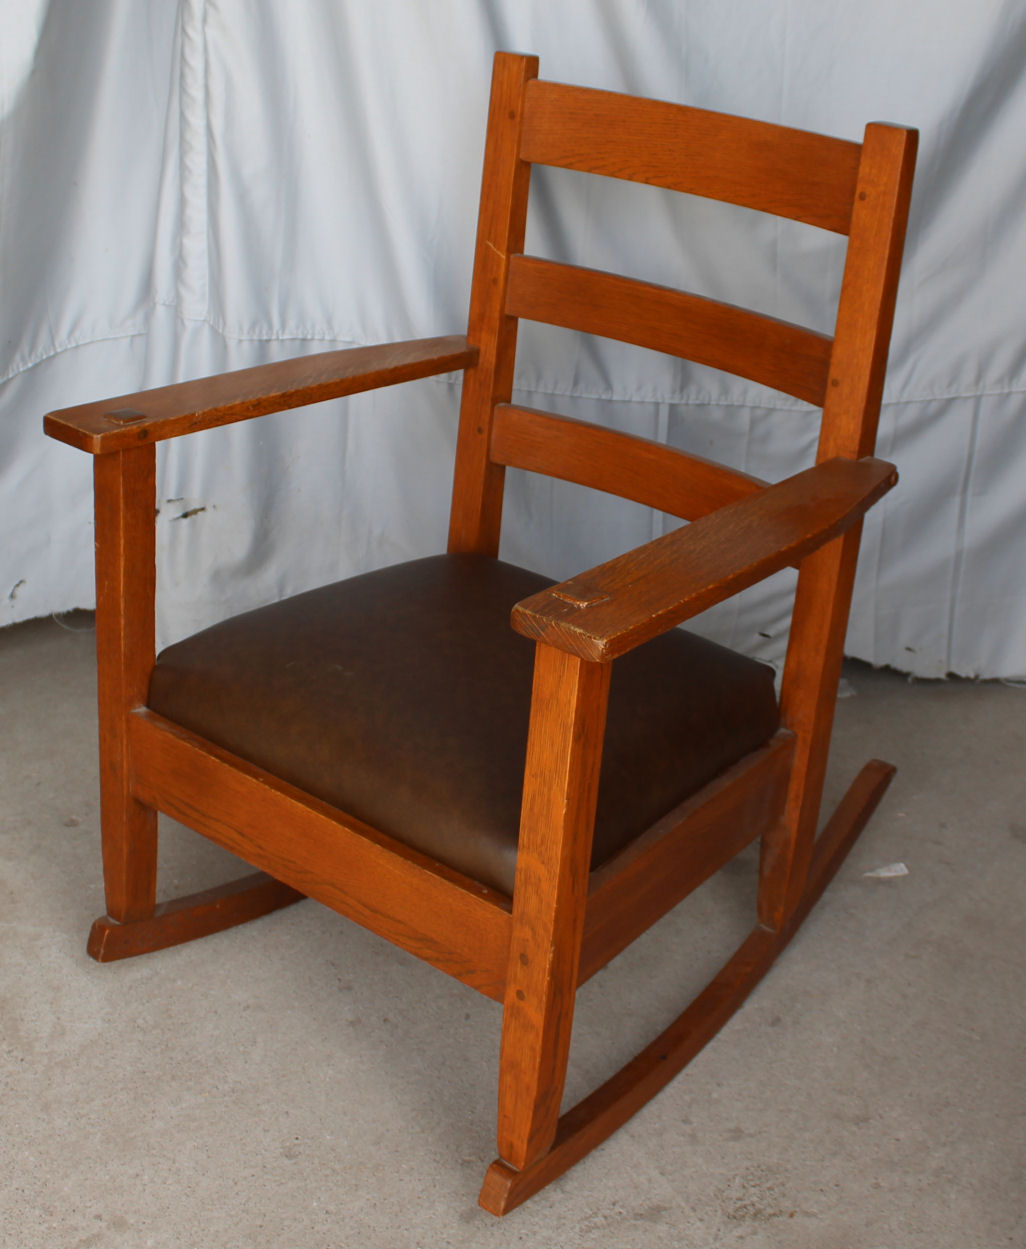 Bargain John S Antiques Antique, Antique Oak Rocking Chair Leather Seat